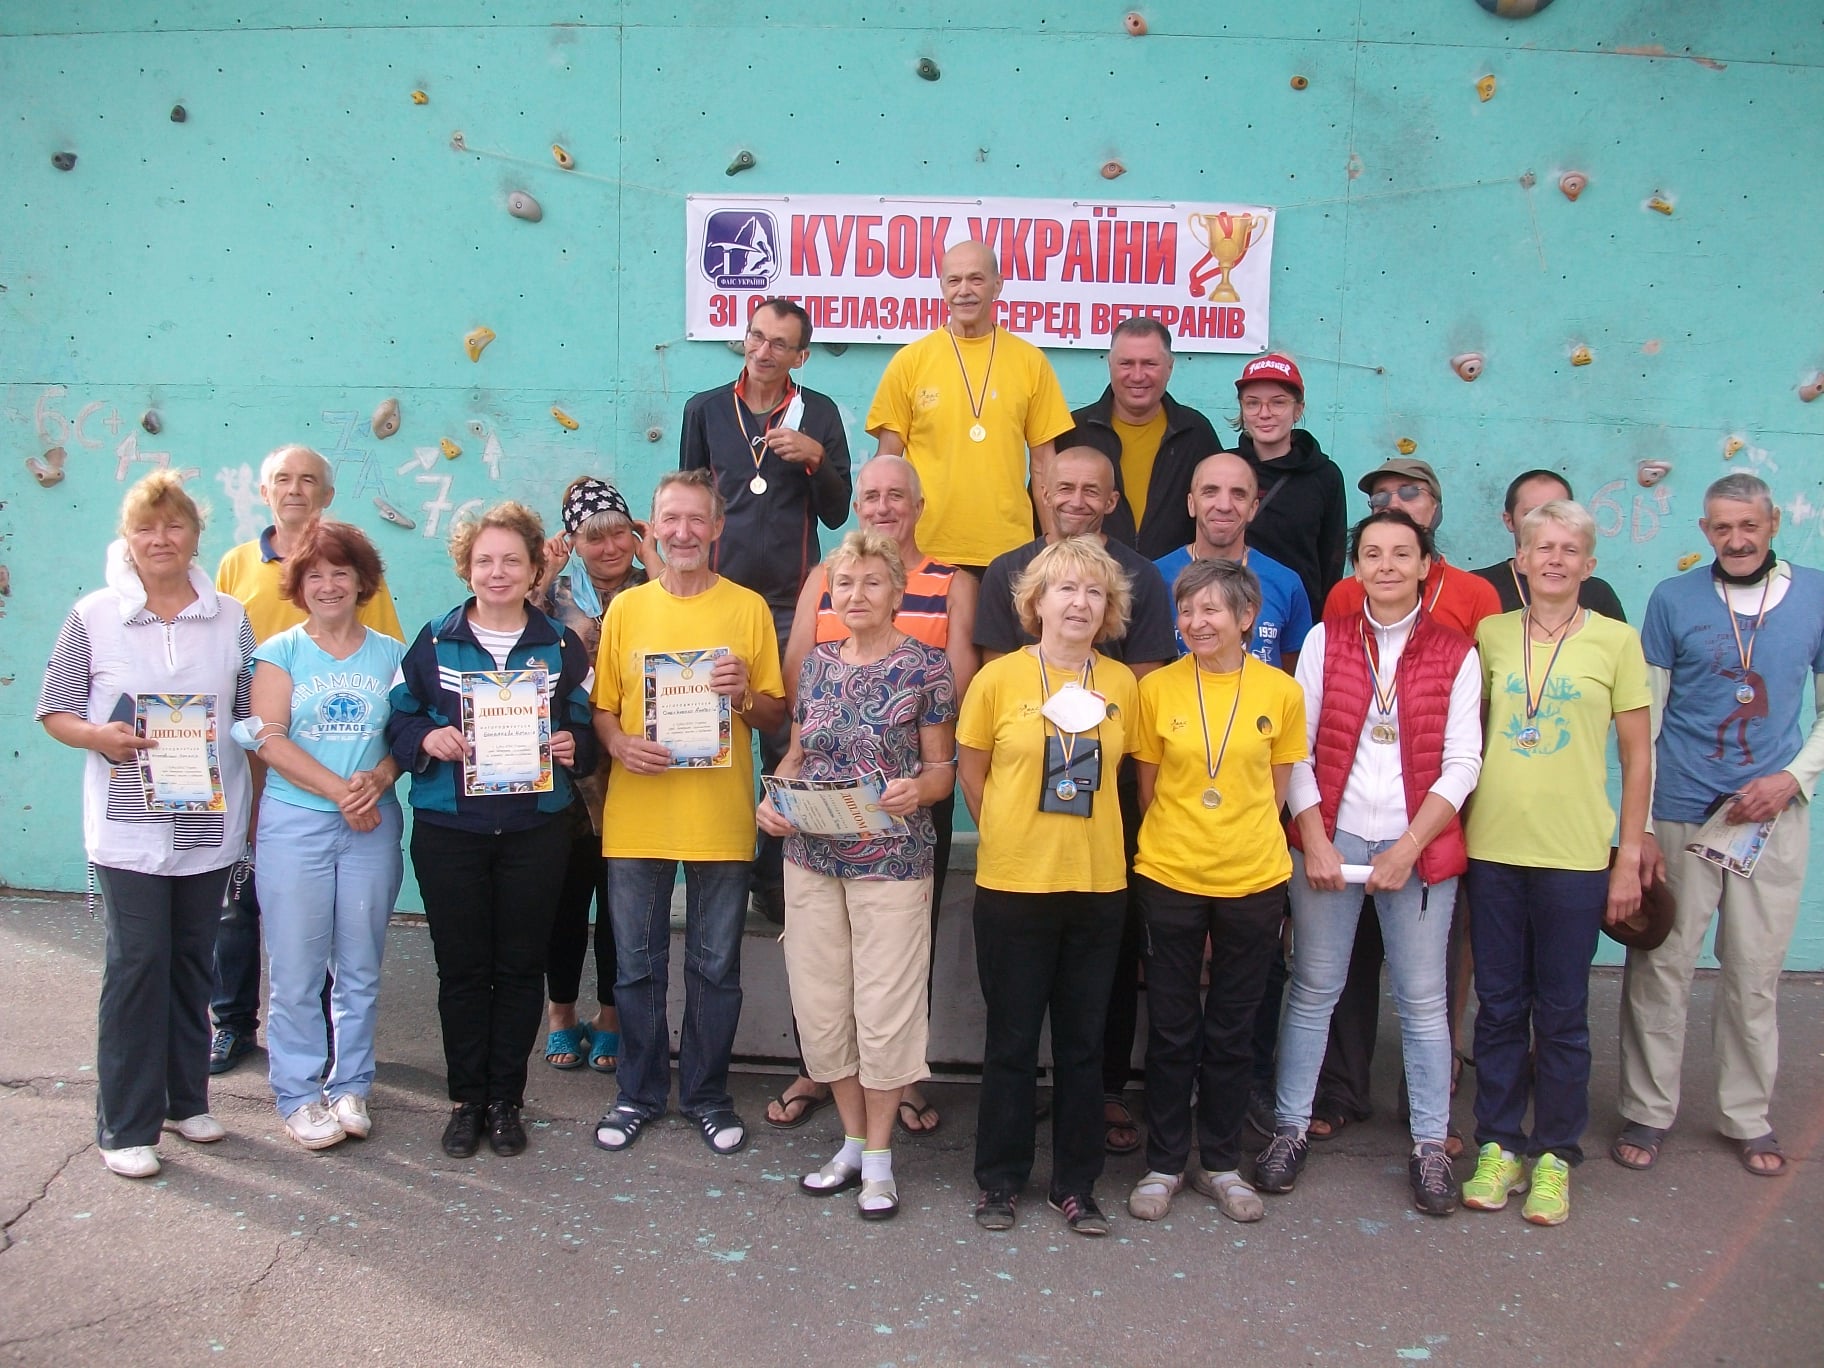  Кубок Федерации альпинизма и скалолазания Украины 2020 года по скалолазанию среди ветеранов.